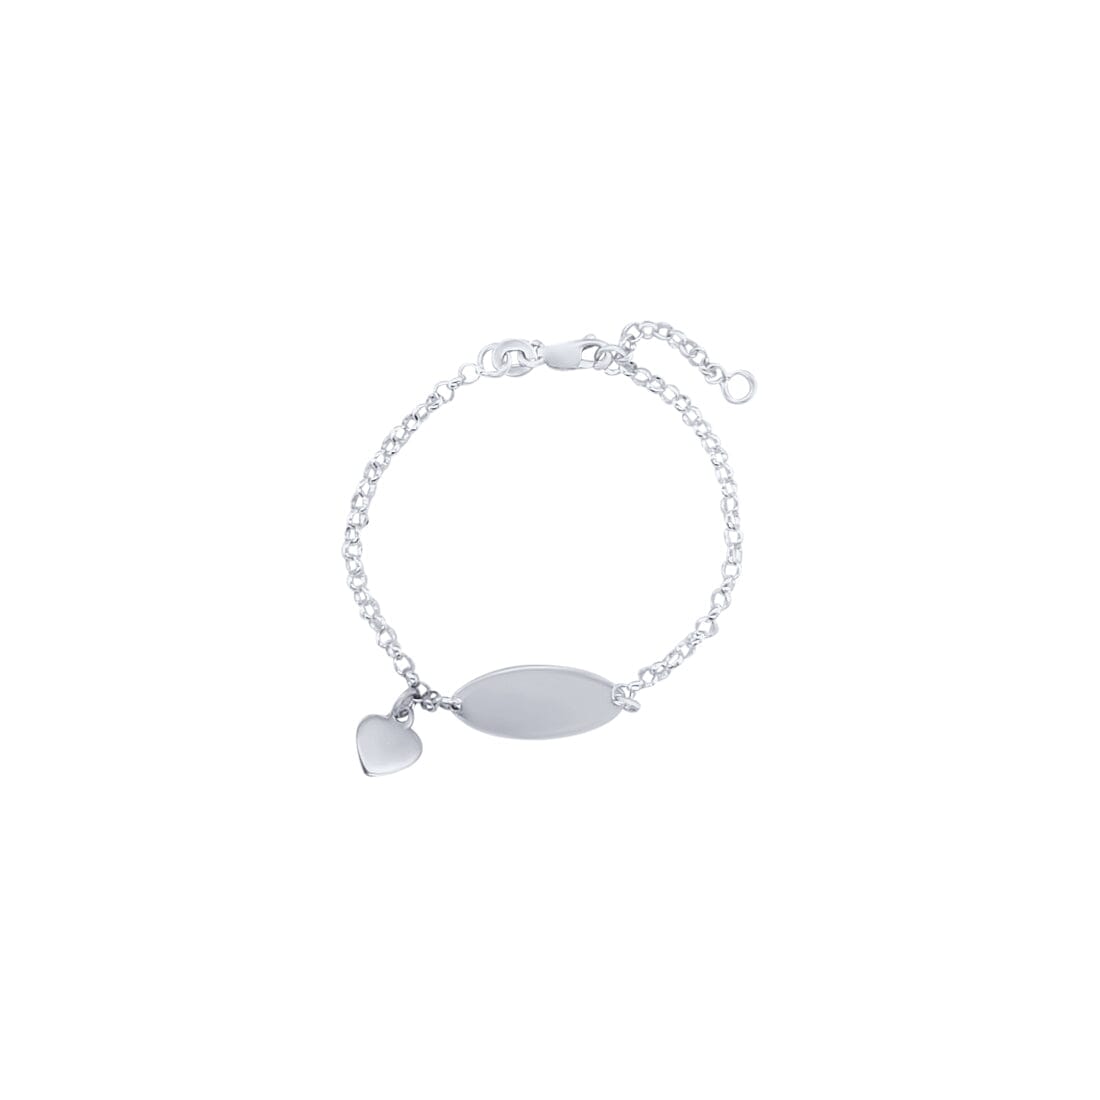 14cm Oval Belcher ID Bracelet with Heart Charm in Sterling Silver Bracelets Bevilles 